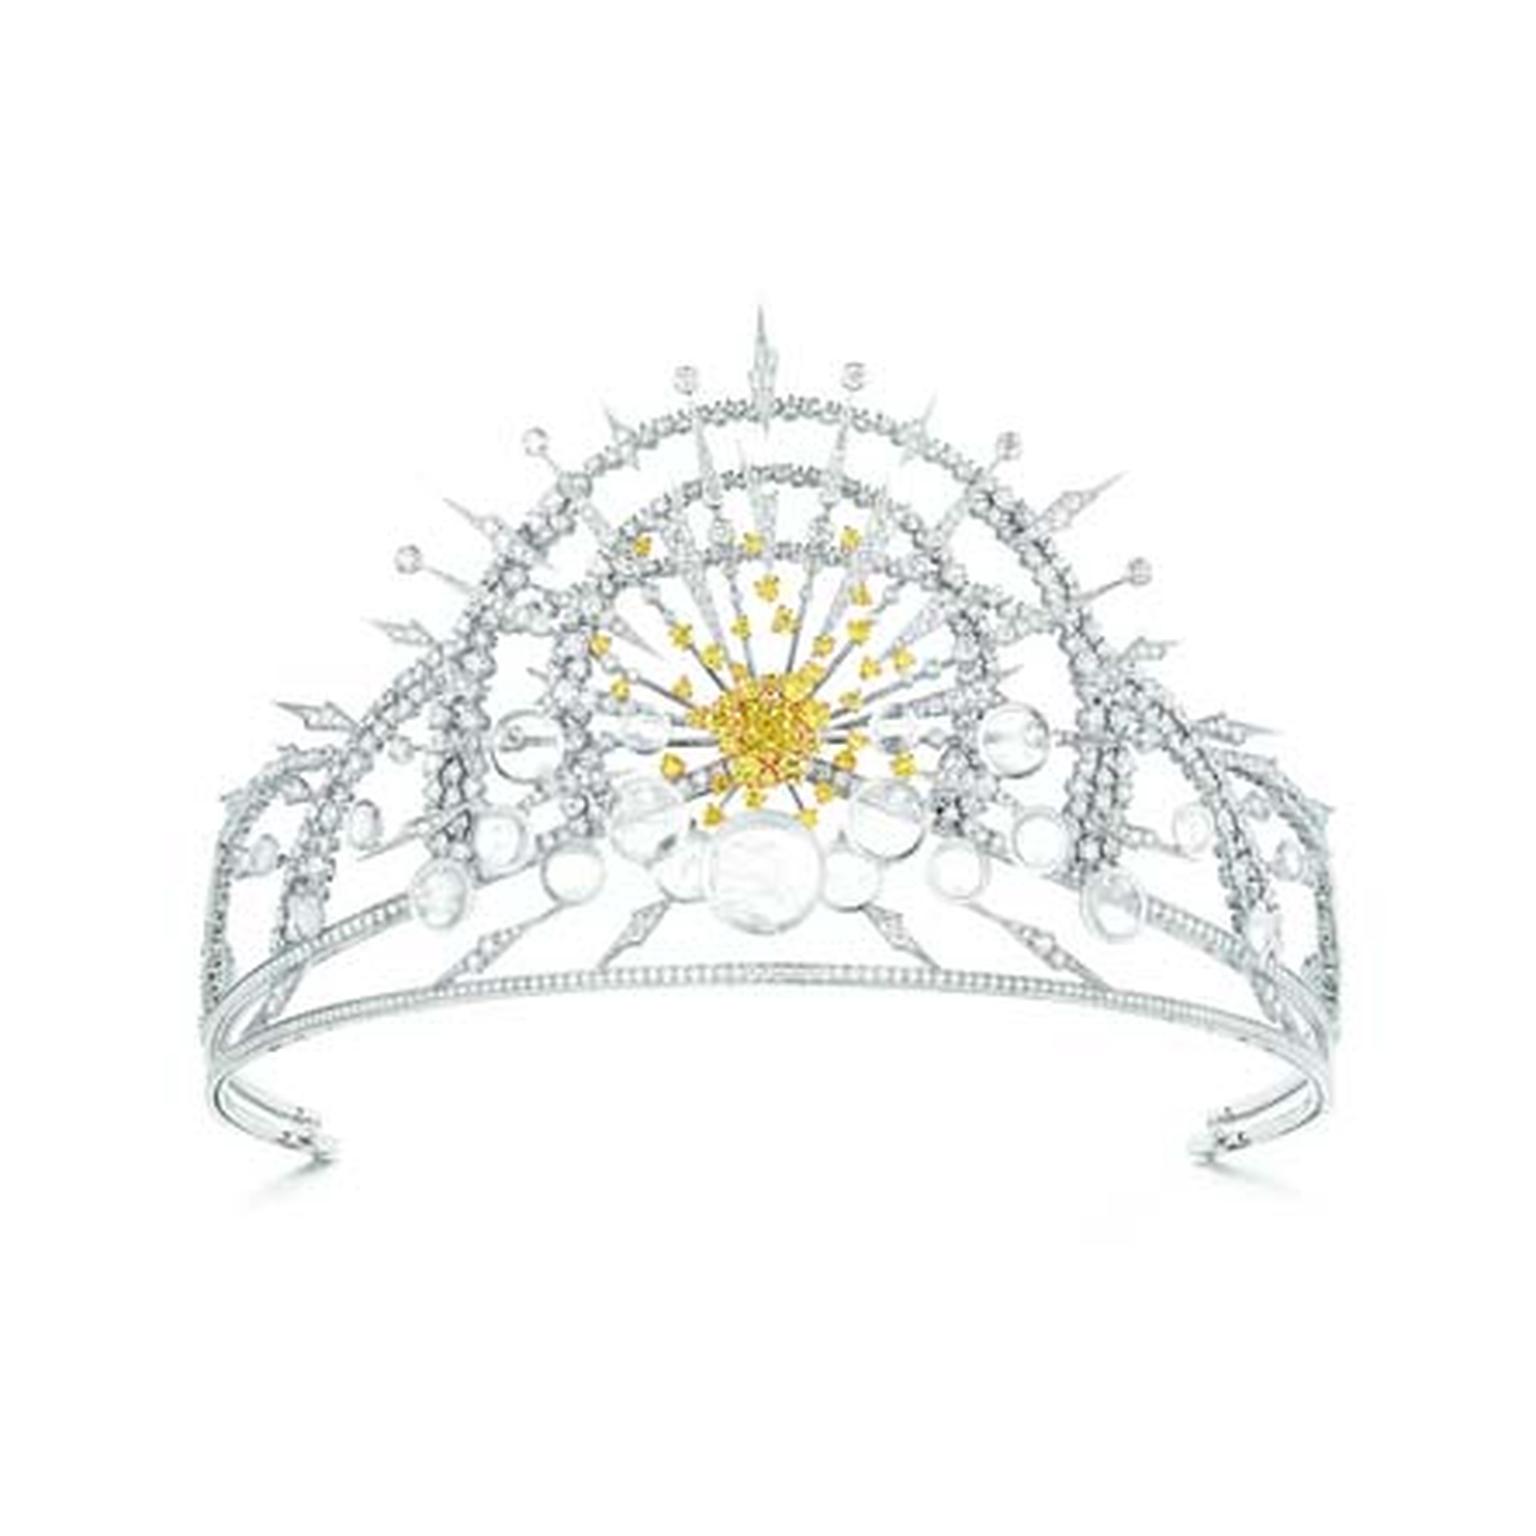 Royal Chaumet tiara presented in Paris new Les Ciels de Chaumet